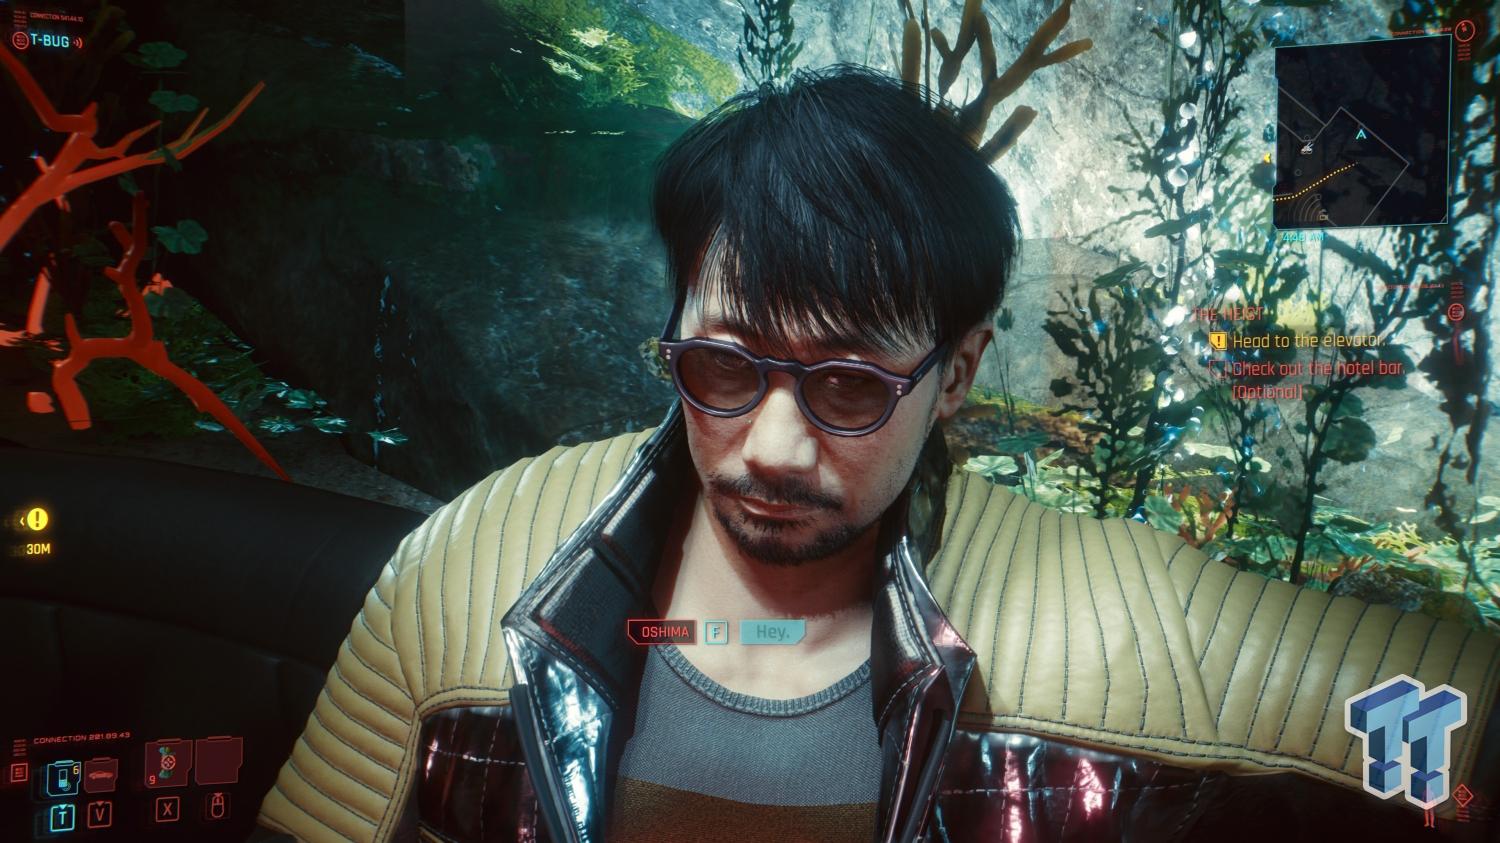 Cyberpunk 2077: Where to find Hideo Kojima - Millenium